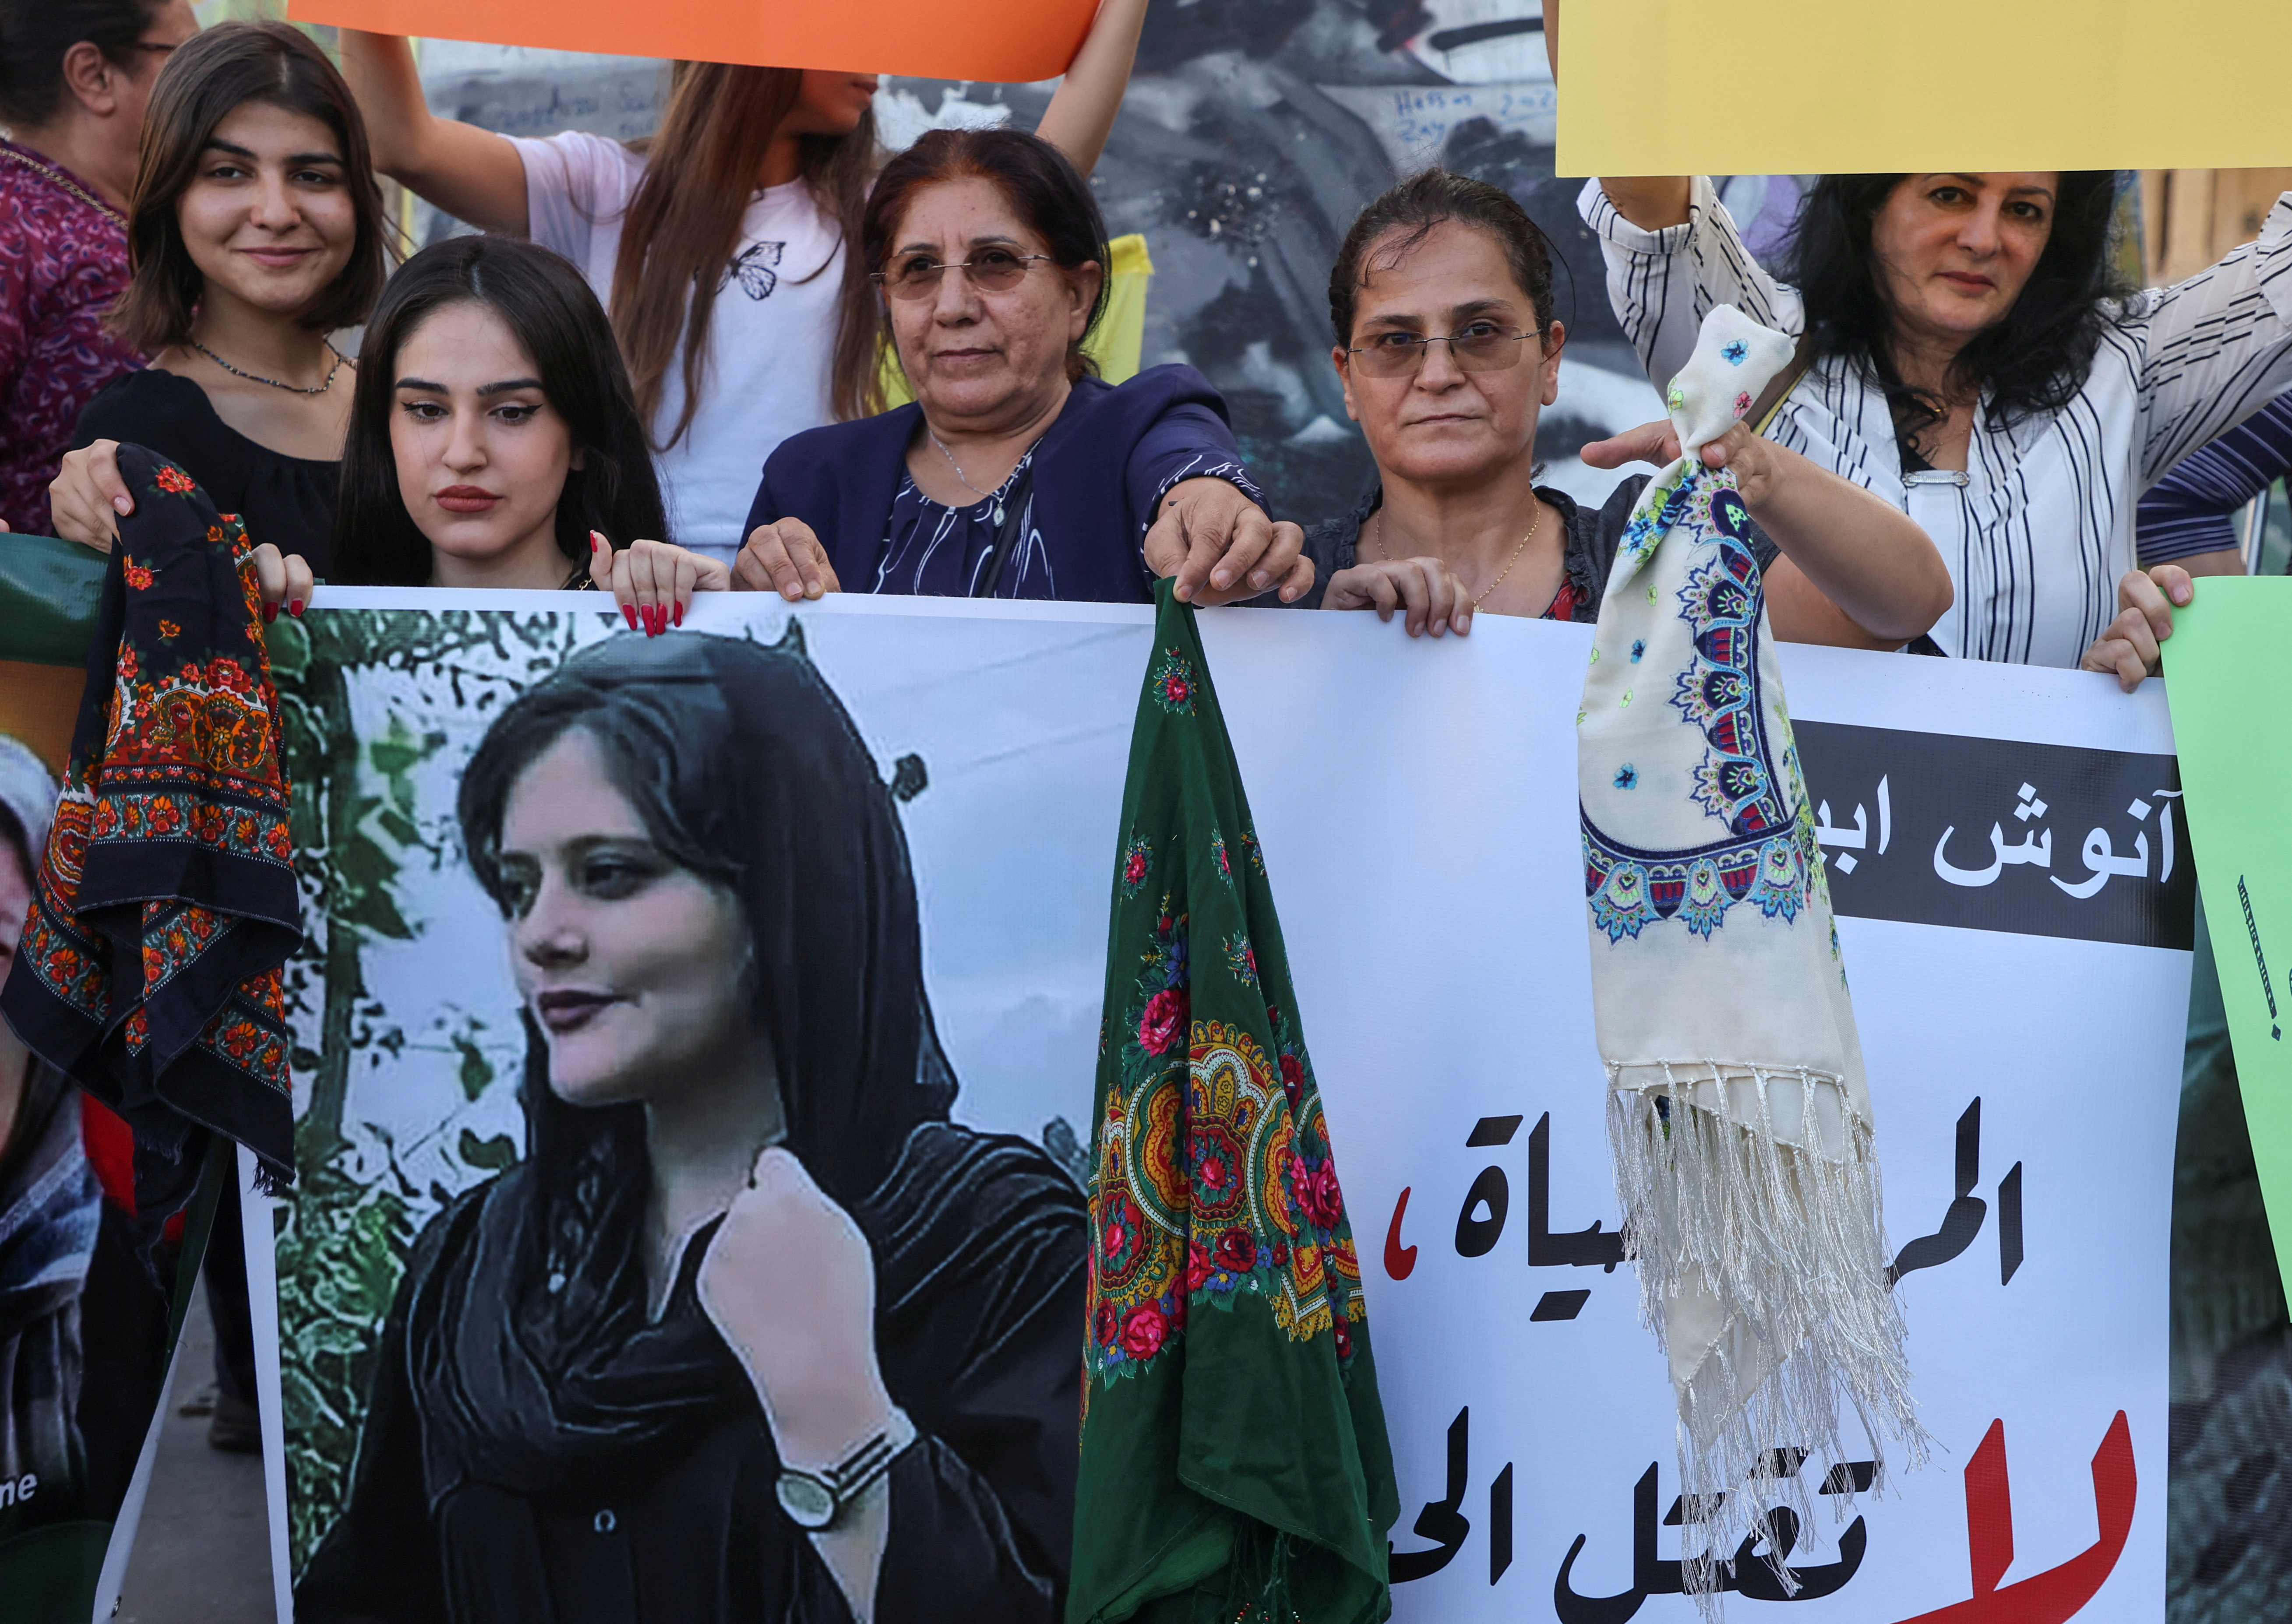 La Guardia Revolucionaria de Irán amenazó a los medios que difunden las protestas por la muerte de Mahsa Amini